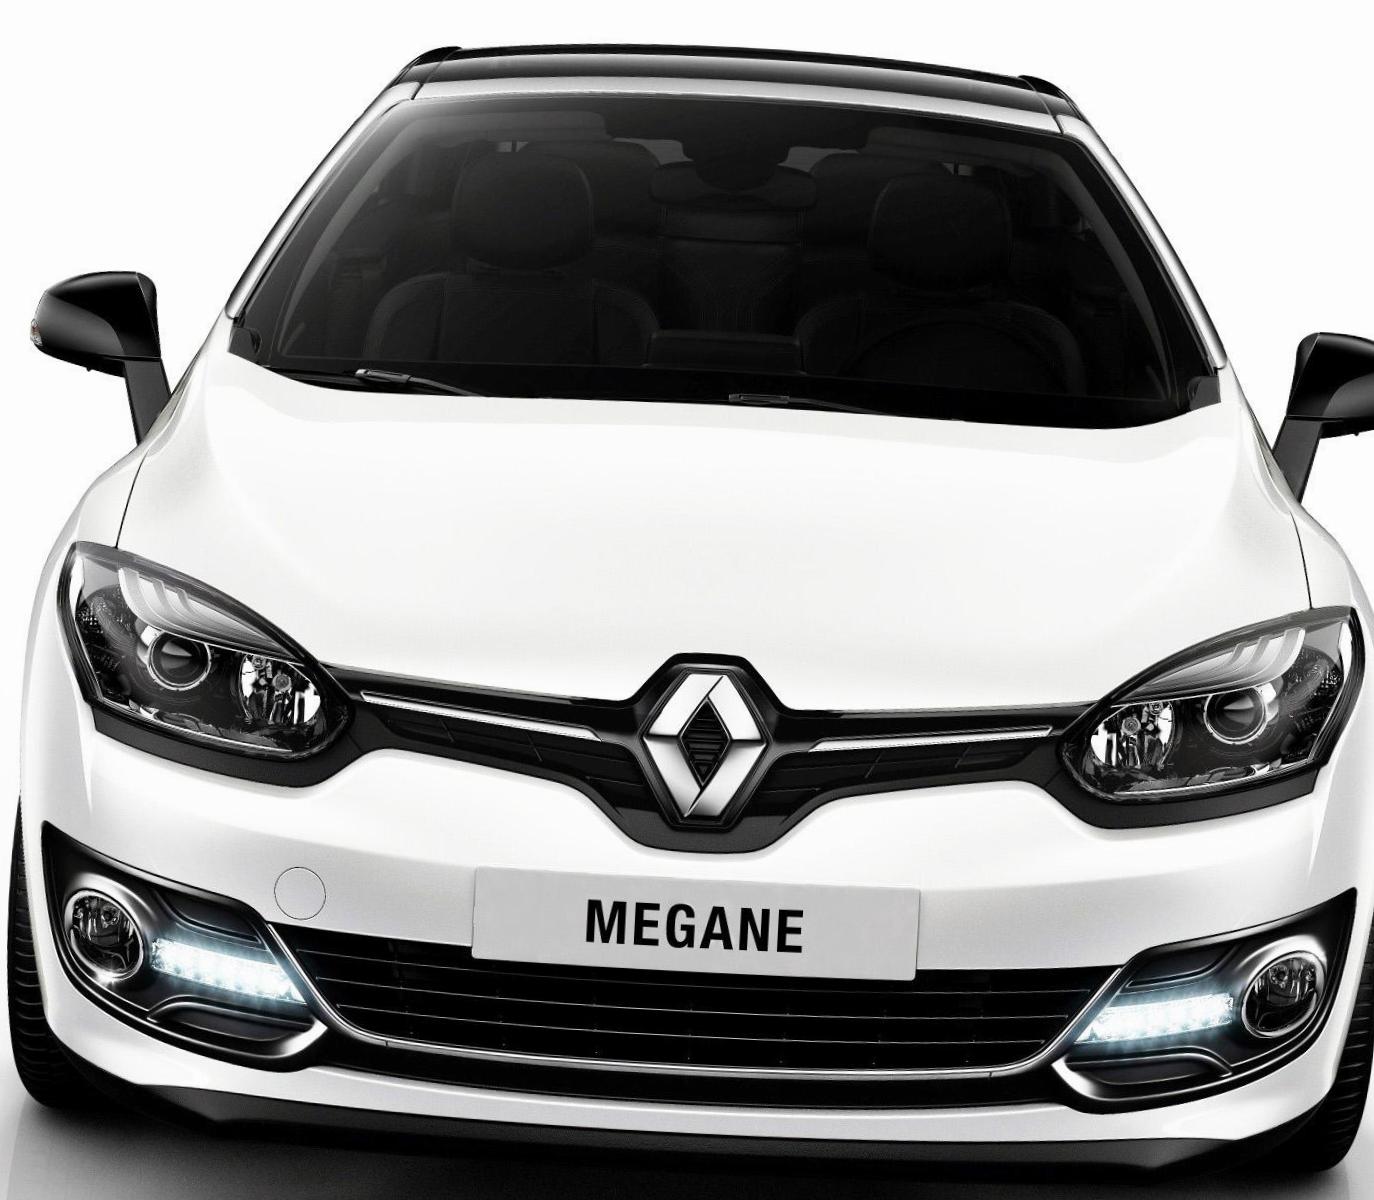 Renault Megane Cabriolet lease hatchback